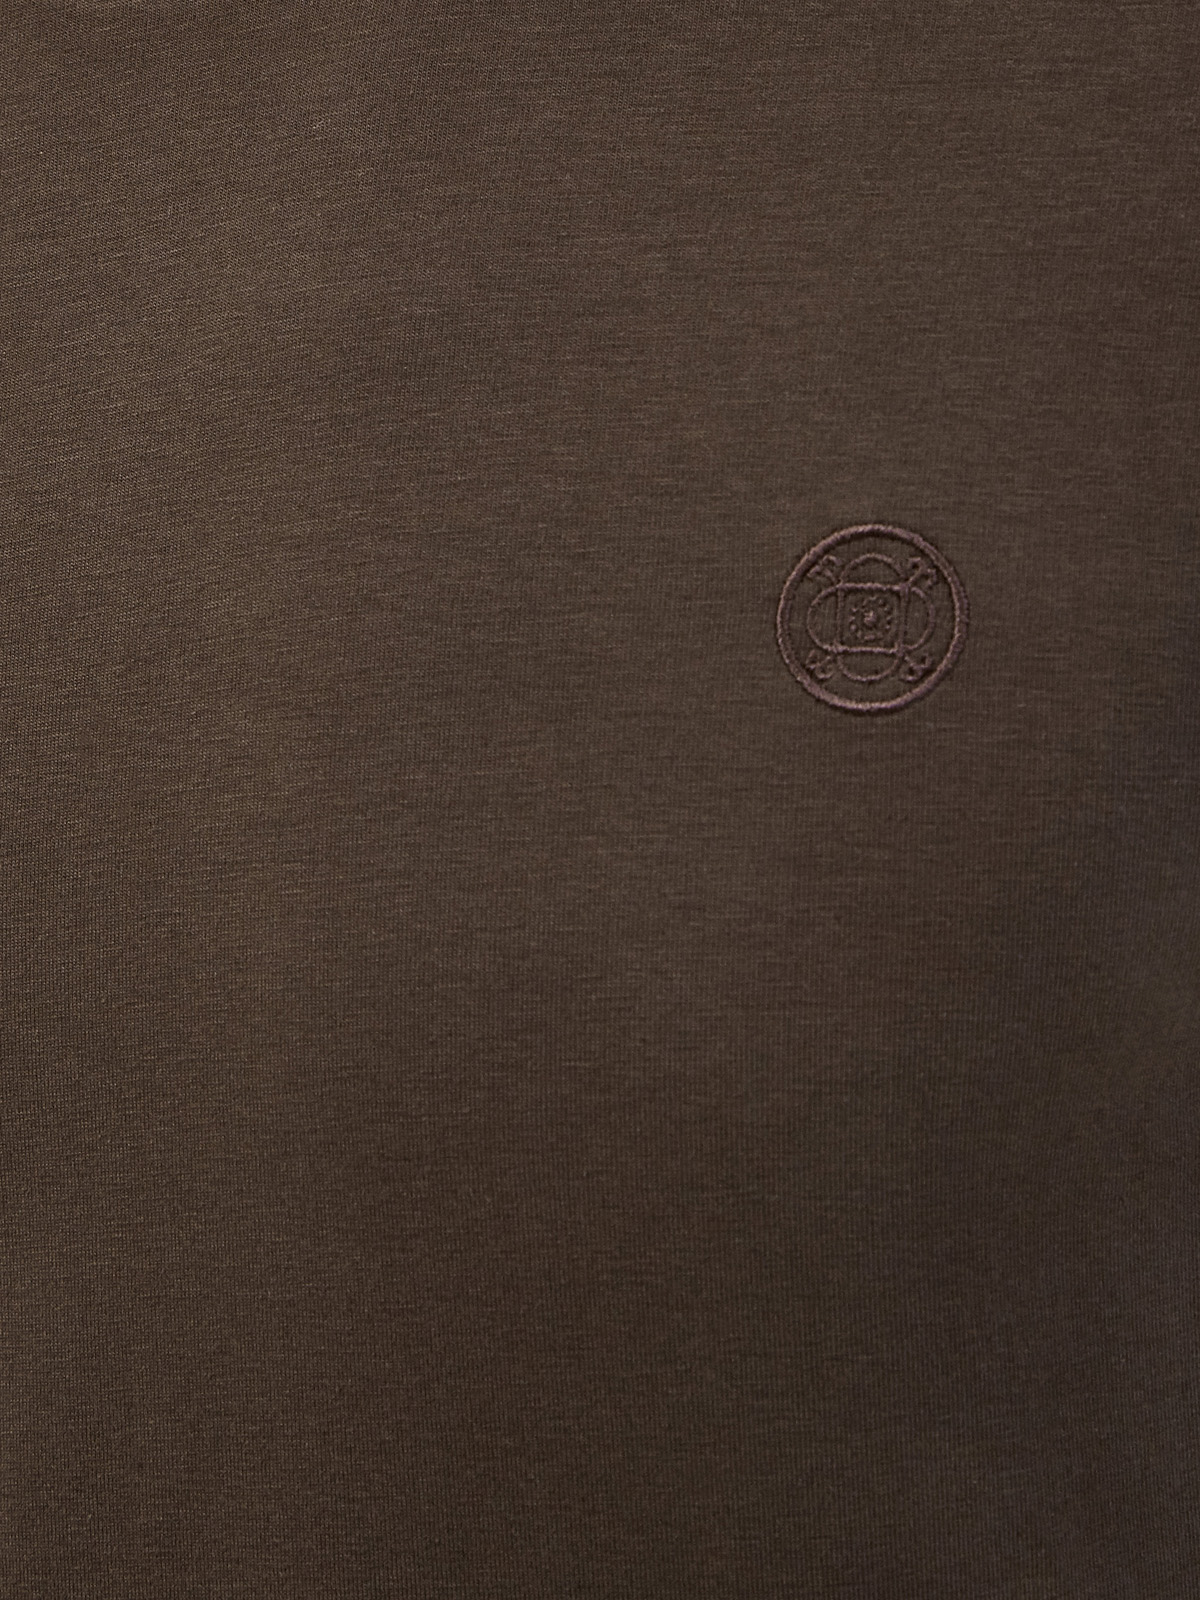 Минималистичный лонгслив с вышитым логотипом в тон CUDGI, цвет коричневый, размер 50;52;54;56;48 - фото 5